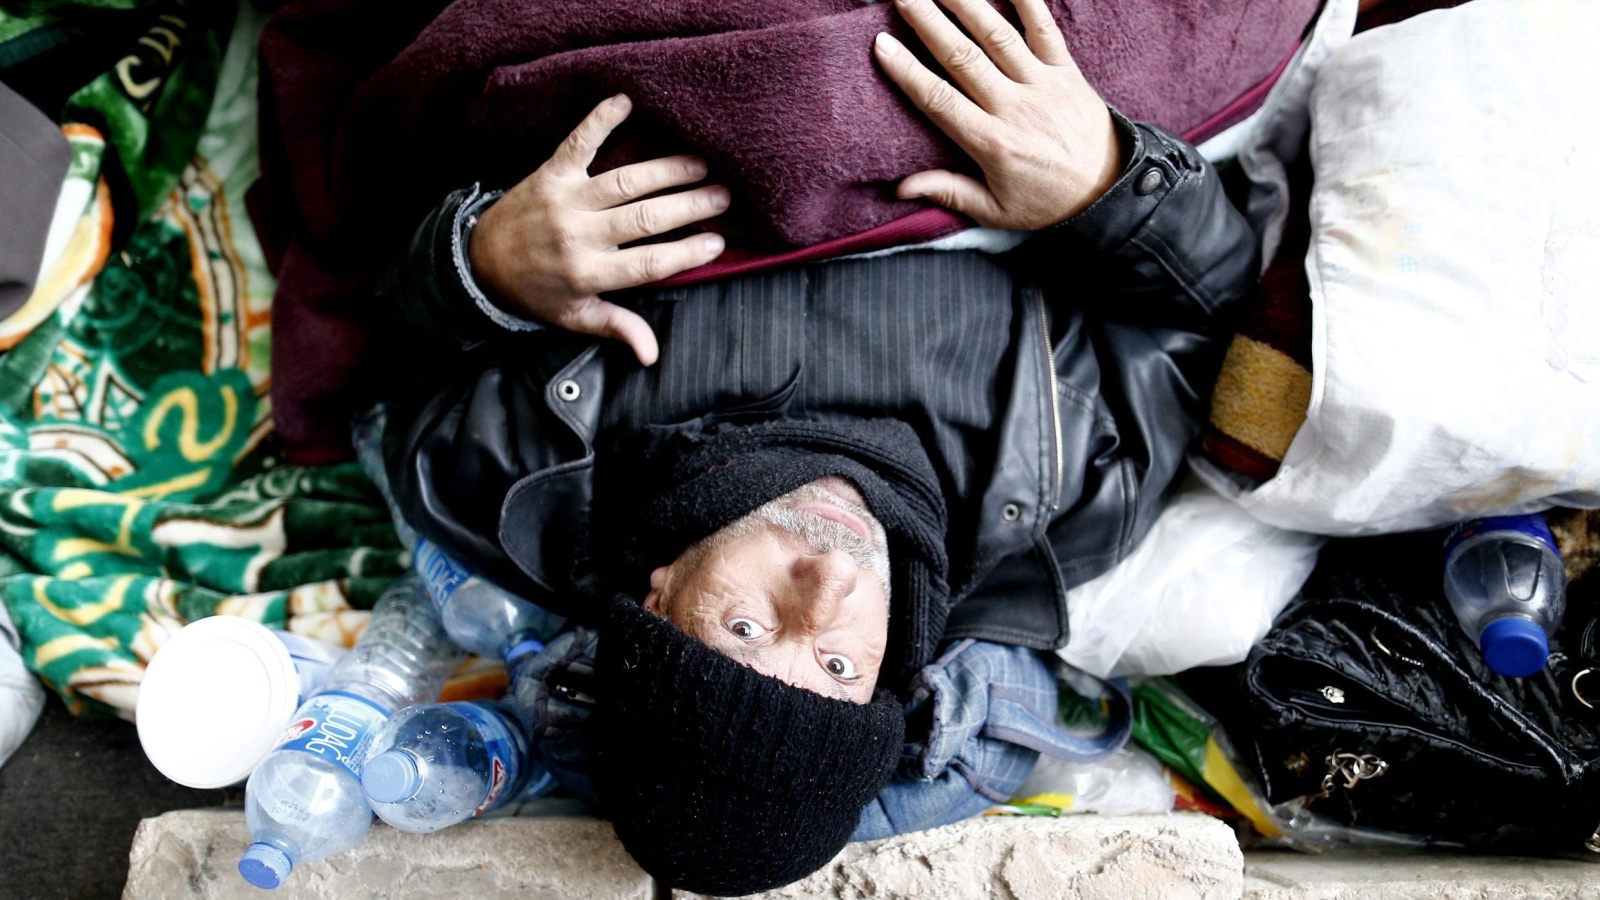 النازحون يعيشون في العراء بلا مأوى في ظل أحوال جوية سيئة (الأوروبية)